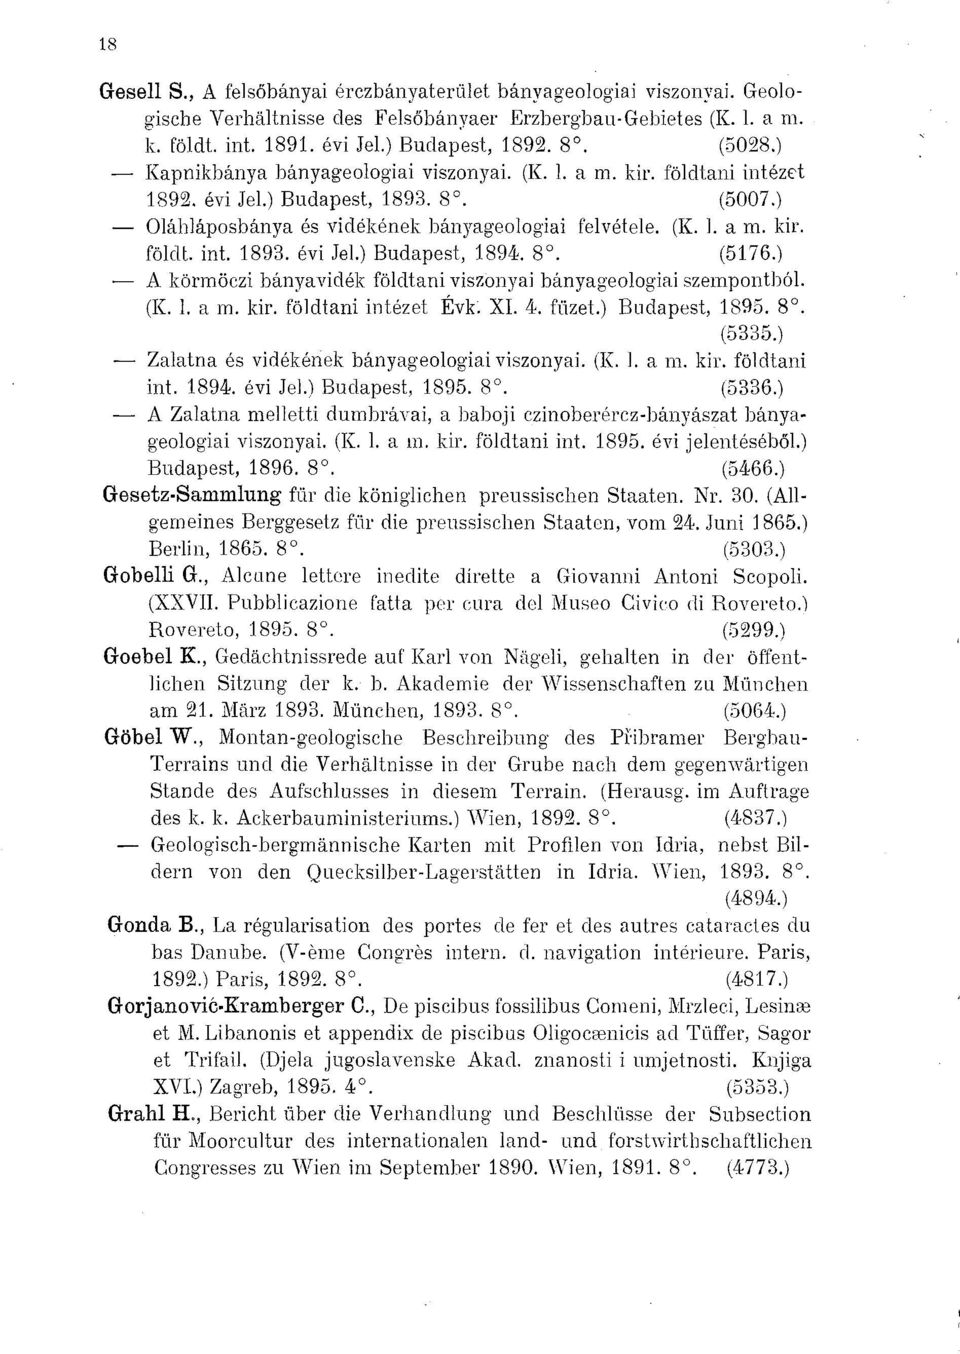 8. (5176.) A körmöczi bányavidék földtani viszonyai bányageologiai szempontból. (K. 1. a m. kir. földtani intézet Évk. XI. 4. füzet.) Budapest, 1895. 8. (5335.